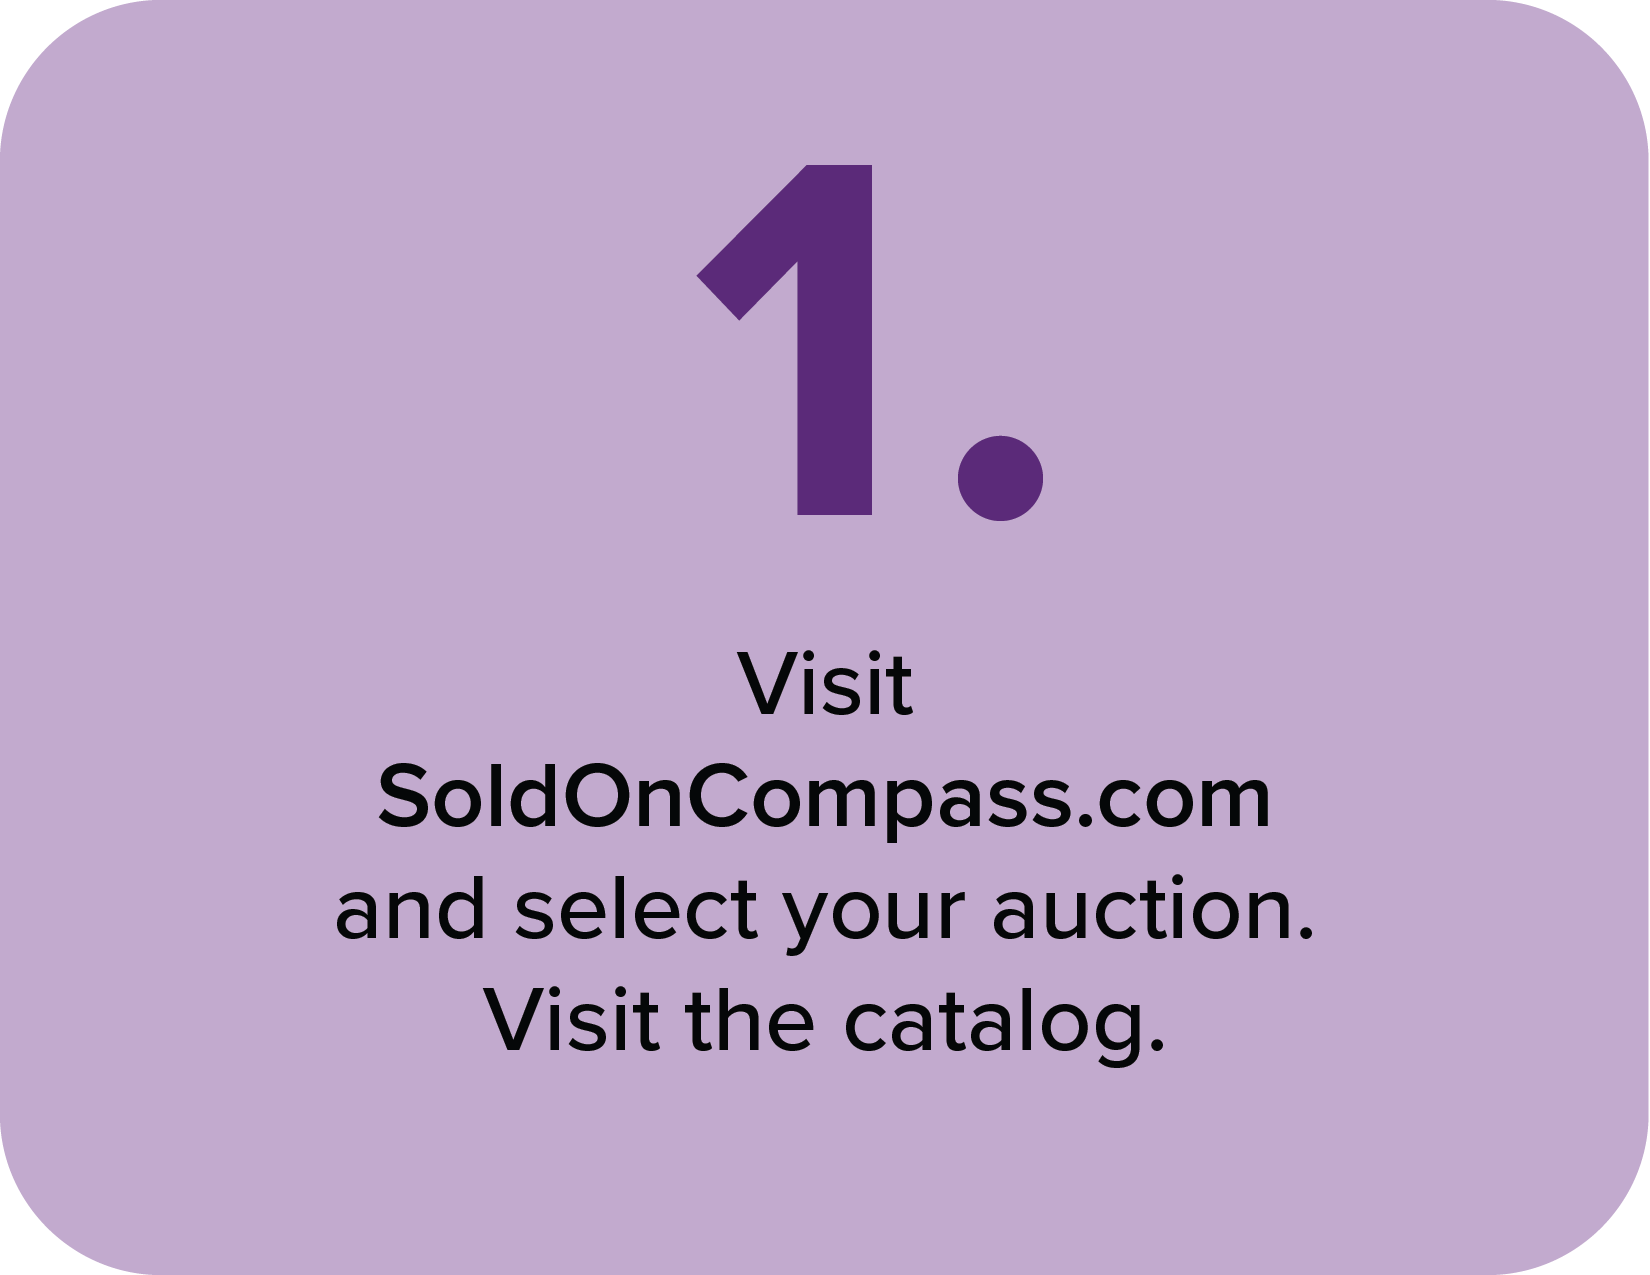 Visit our website, SoldOnCompass.com!